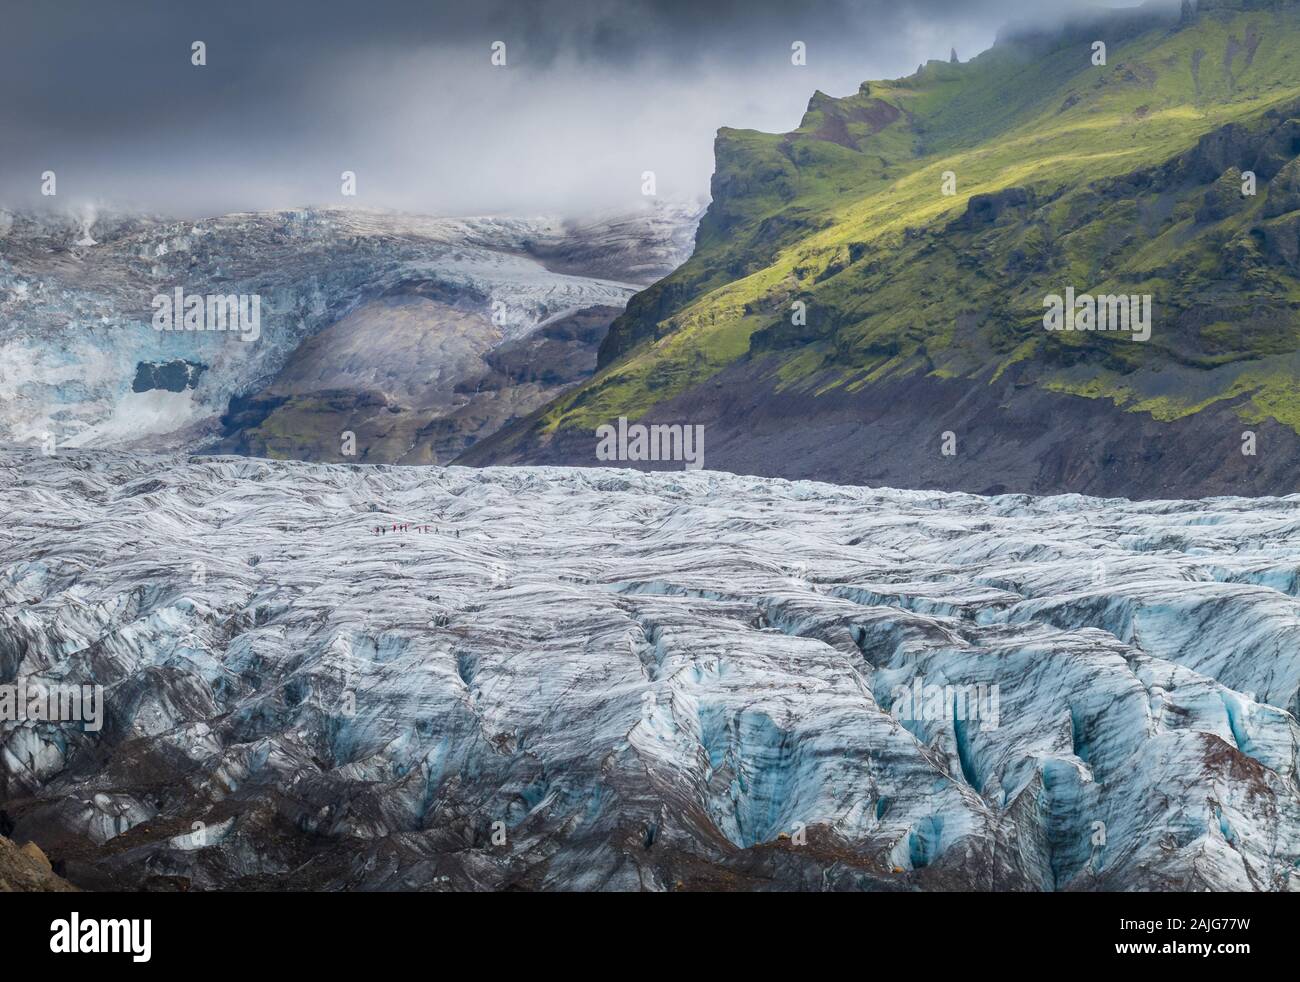 Islandia en verano: impresionante paisaje islandés con hielo azul glaciar con grietas, montañas cubiertas de hierba verde y cielo espectacular Foto de stock